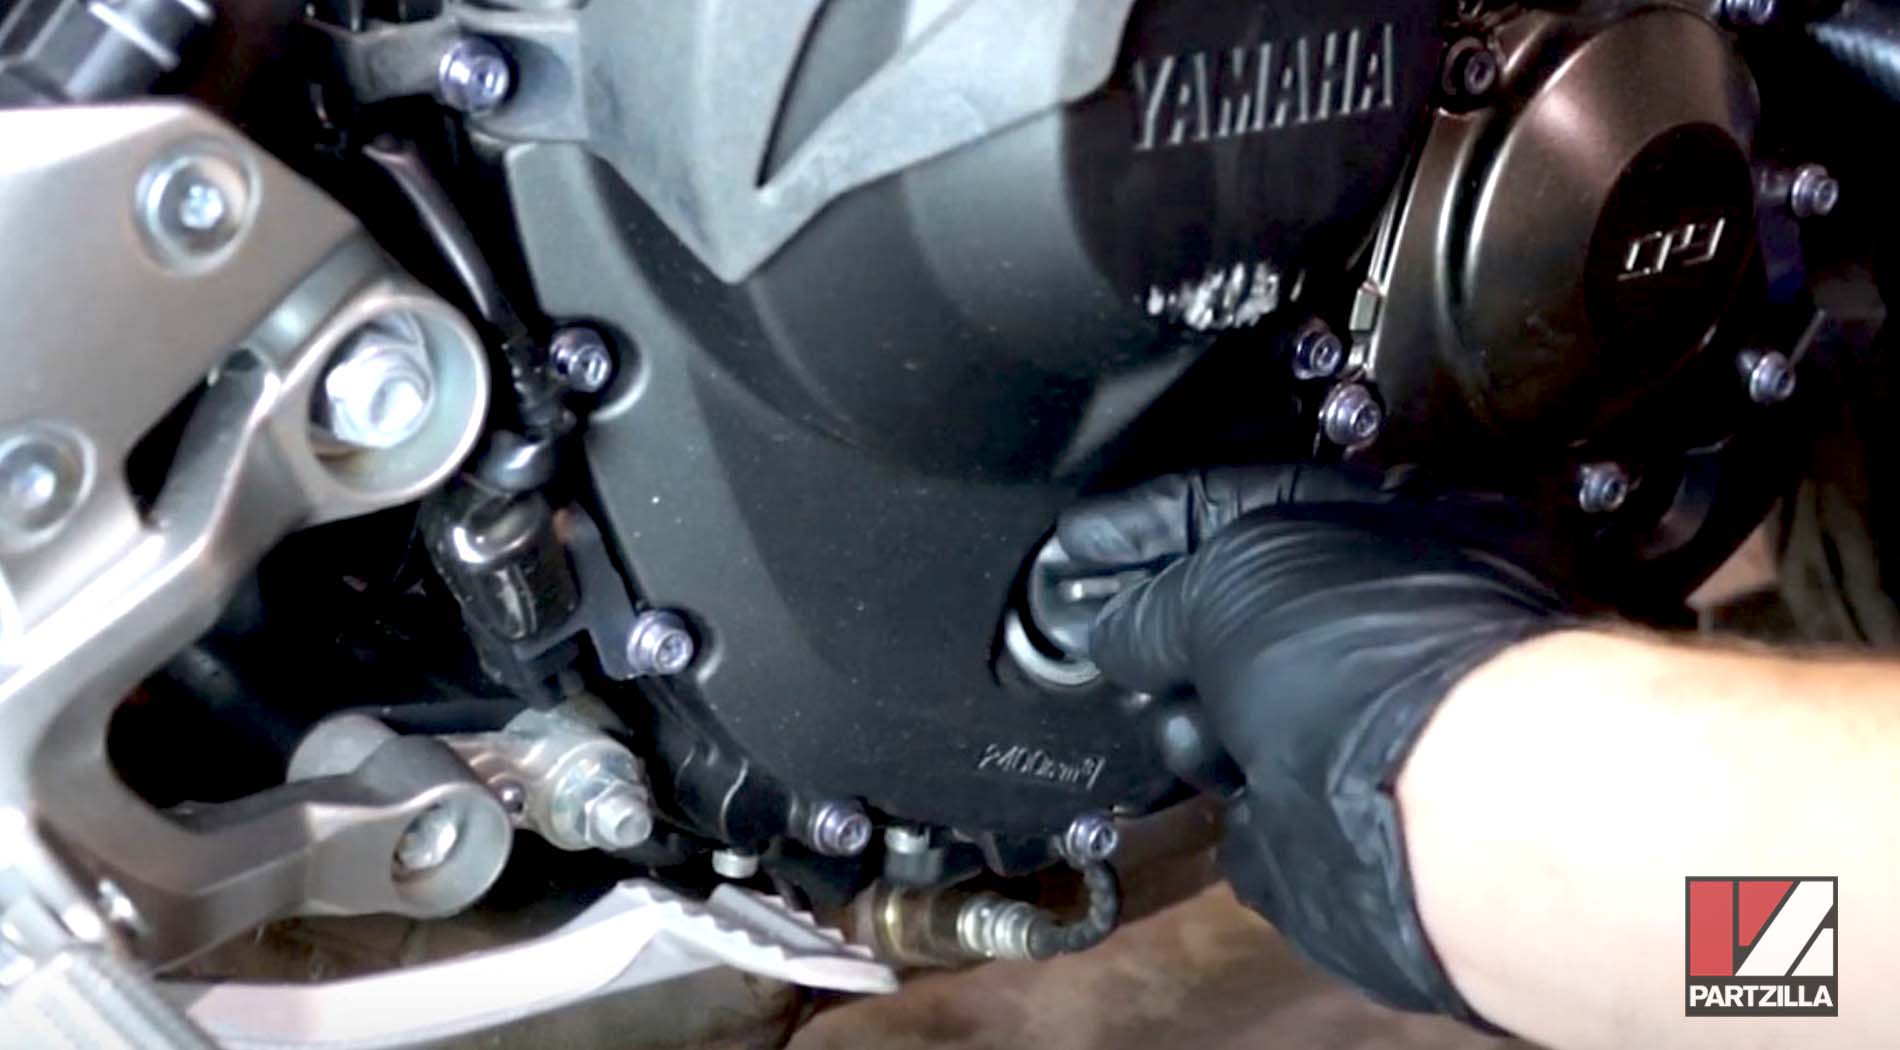 Yamaha FZ-09 motorcycle oil change